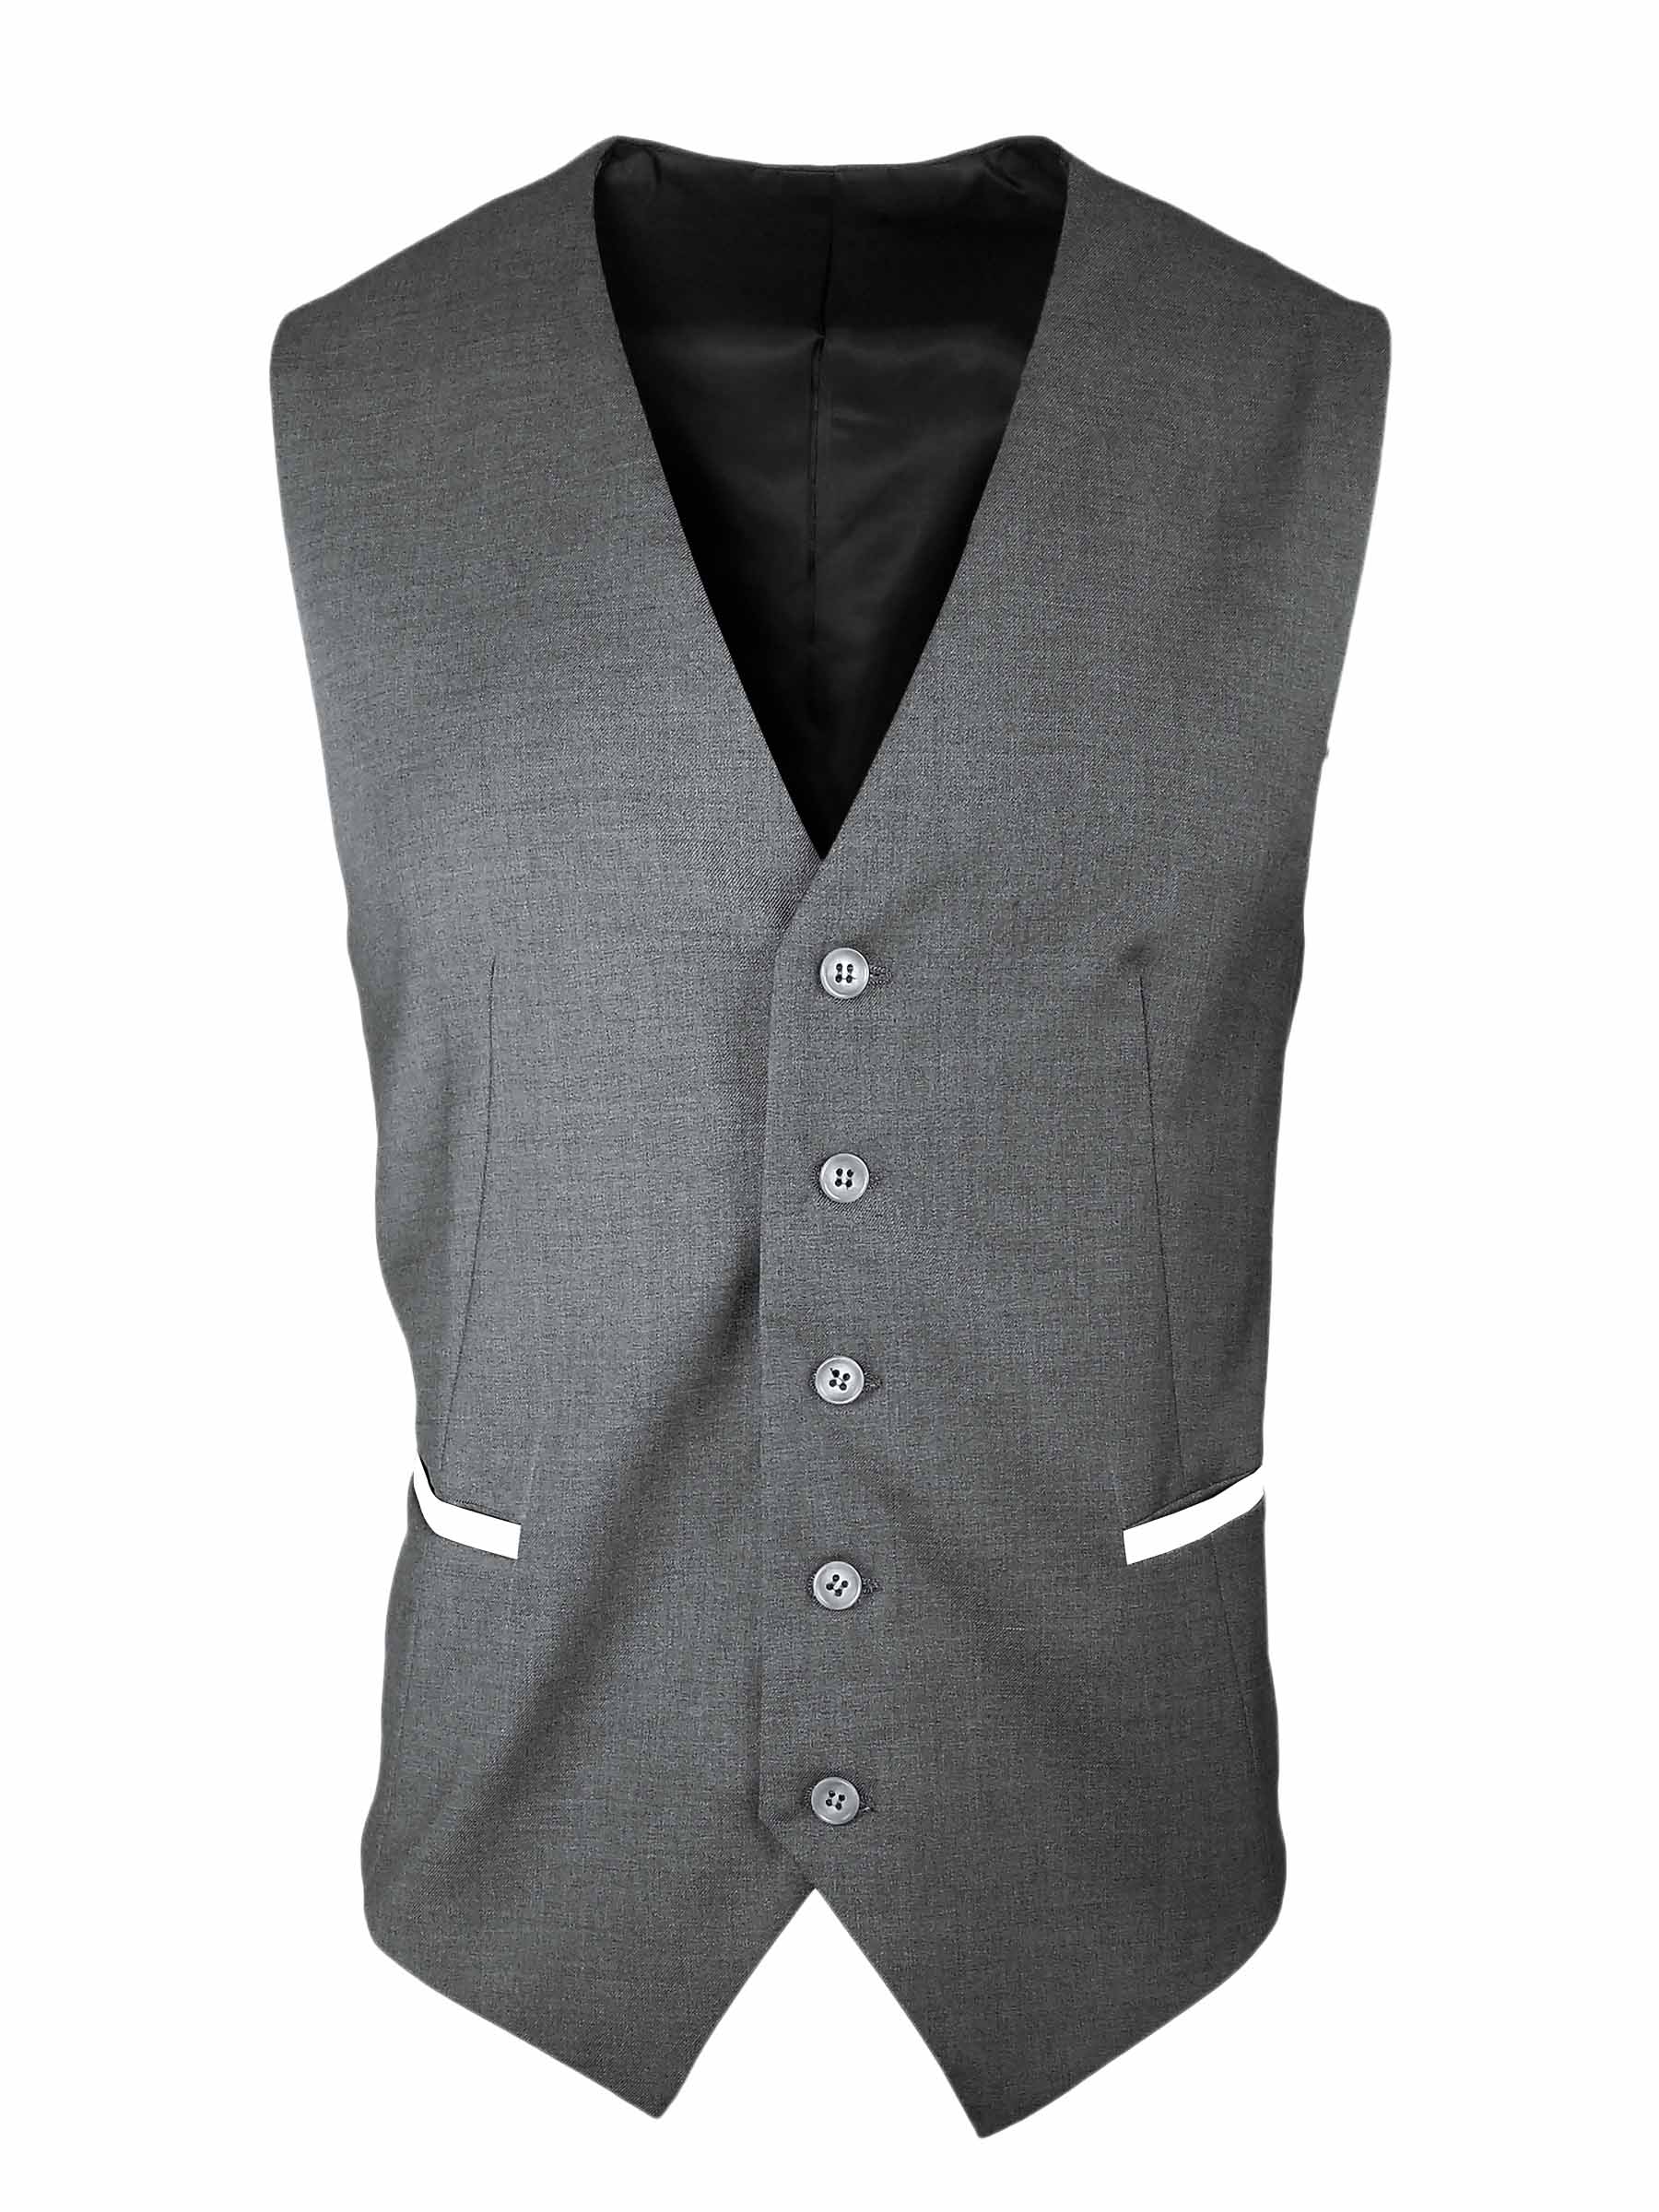 Men's Trim Vest - Grey with White - Uniform Edit